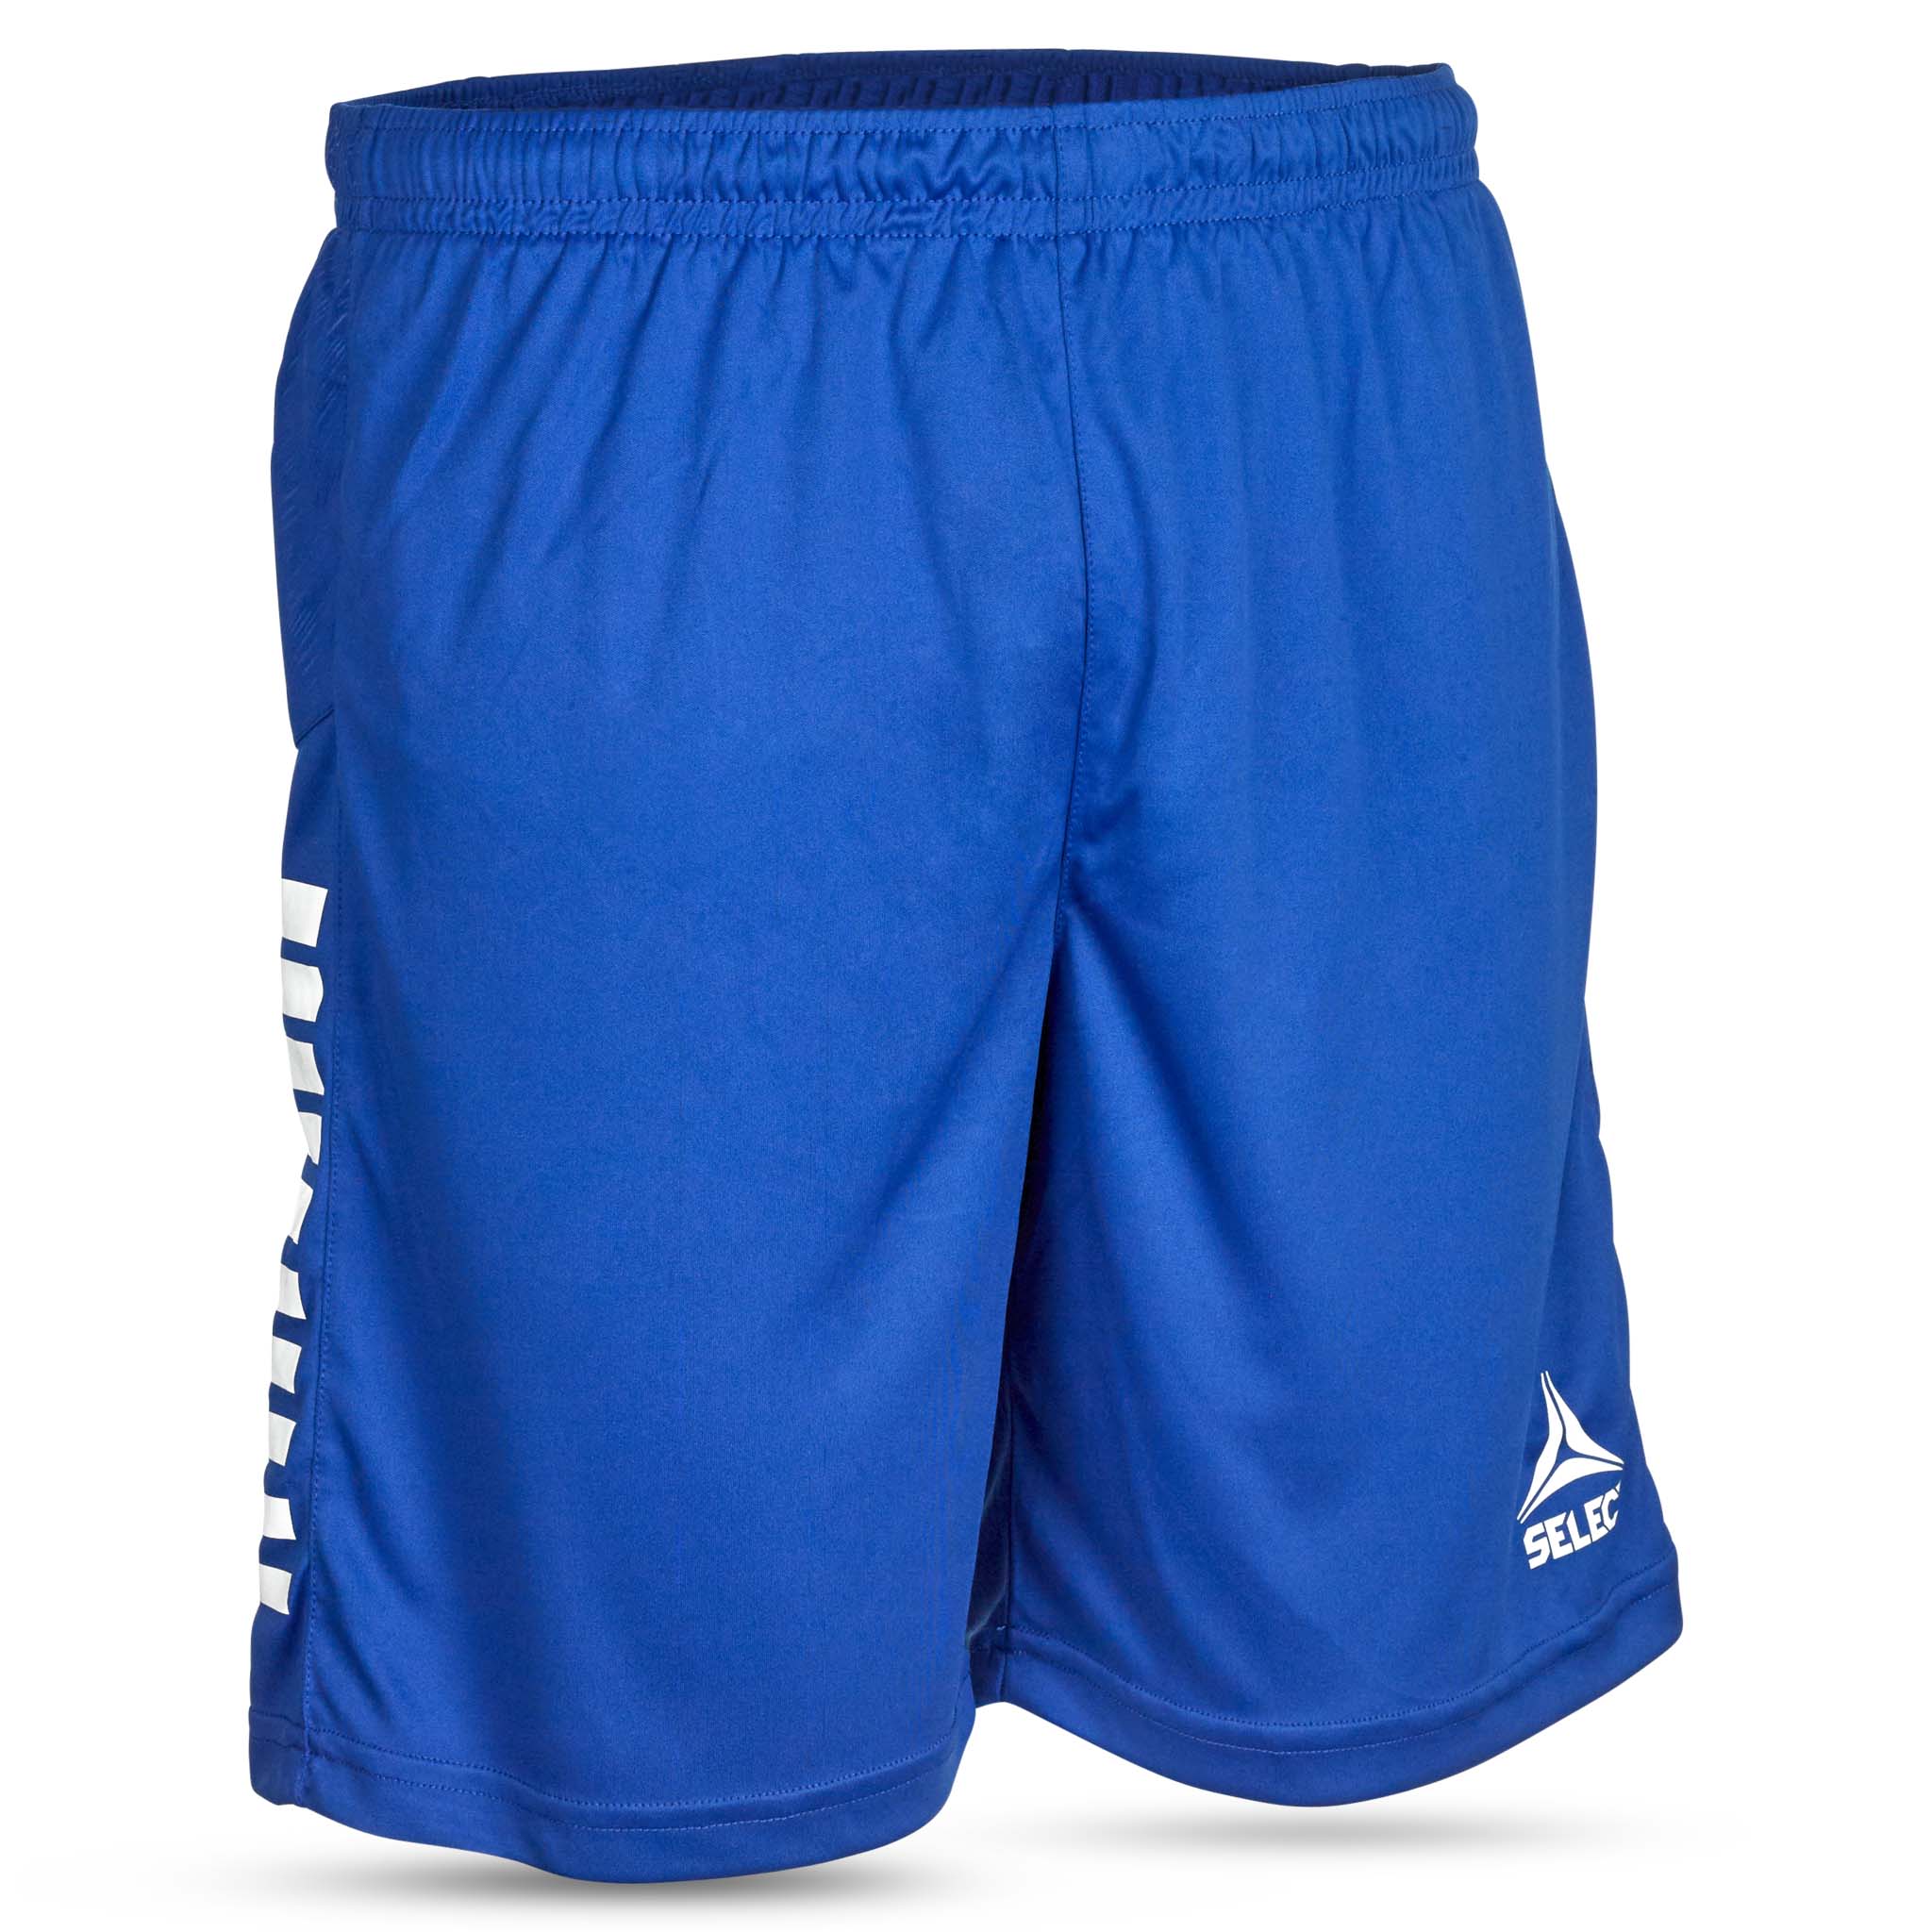 Spain Player shorts #colour_blue